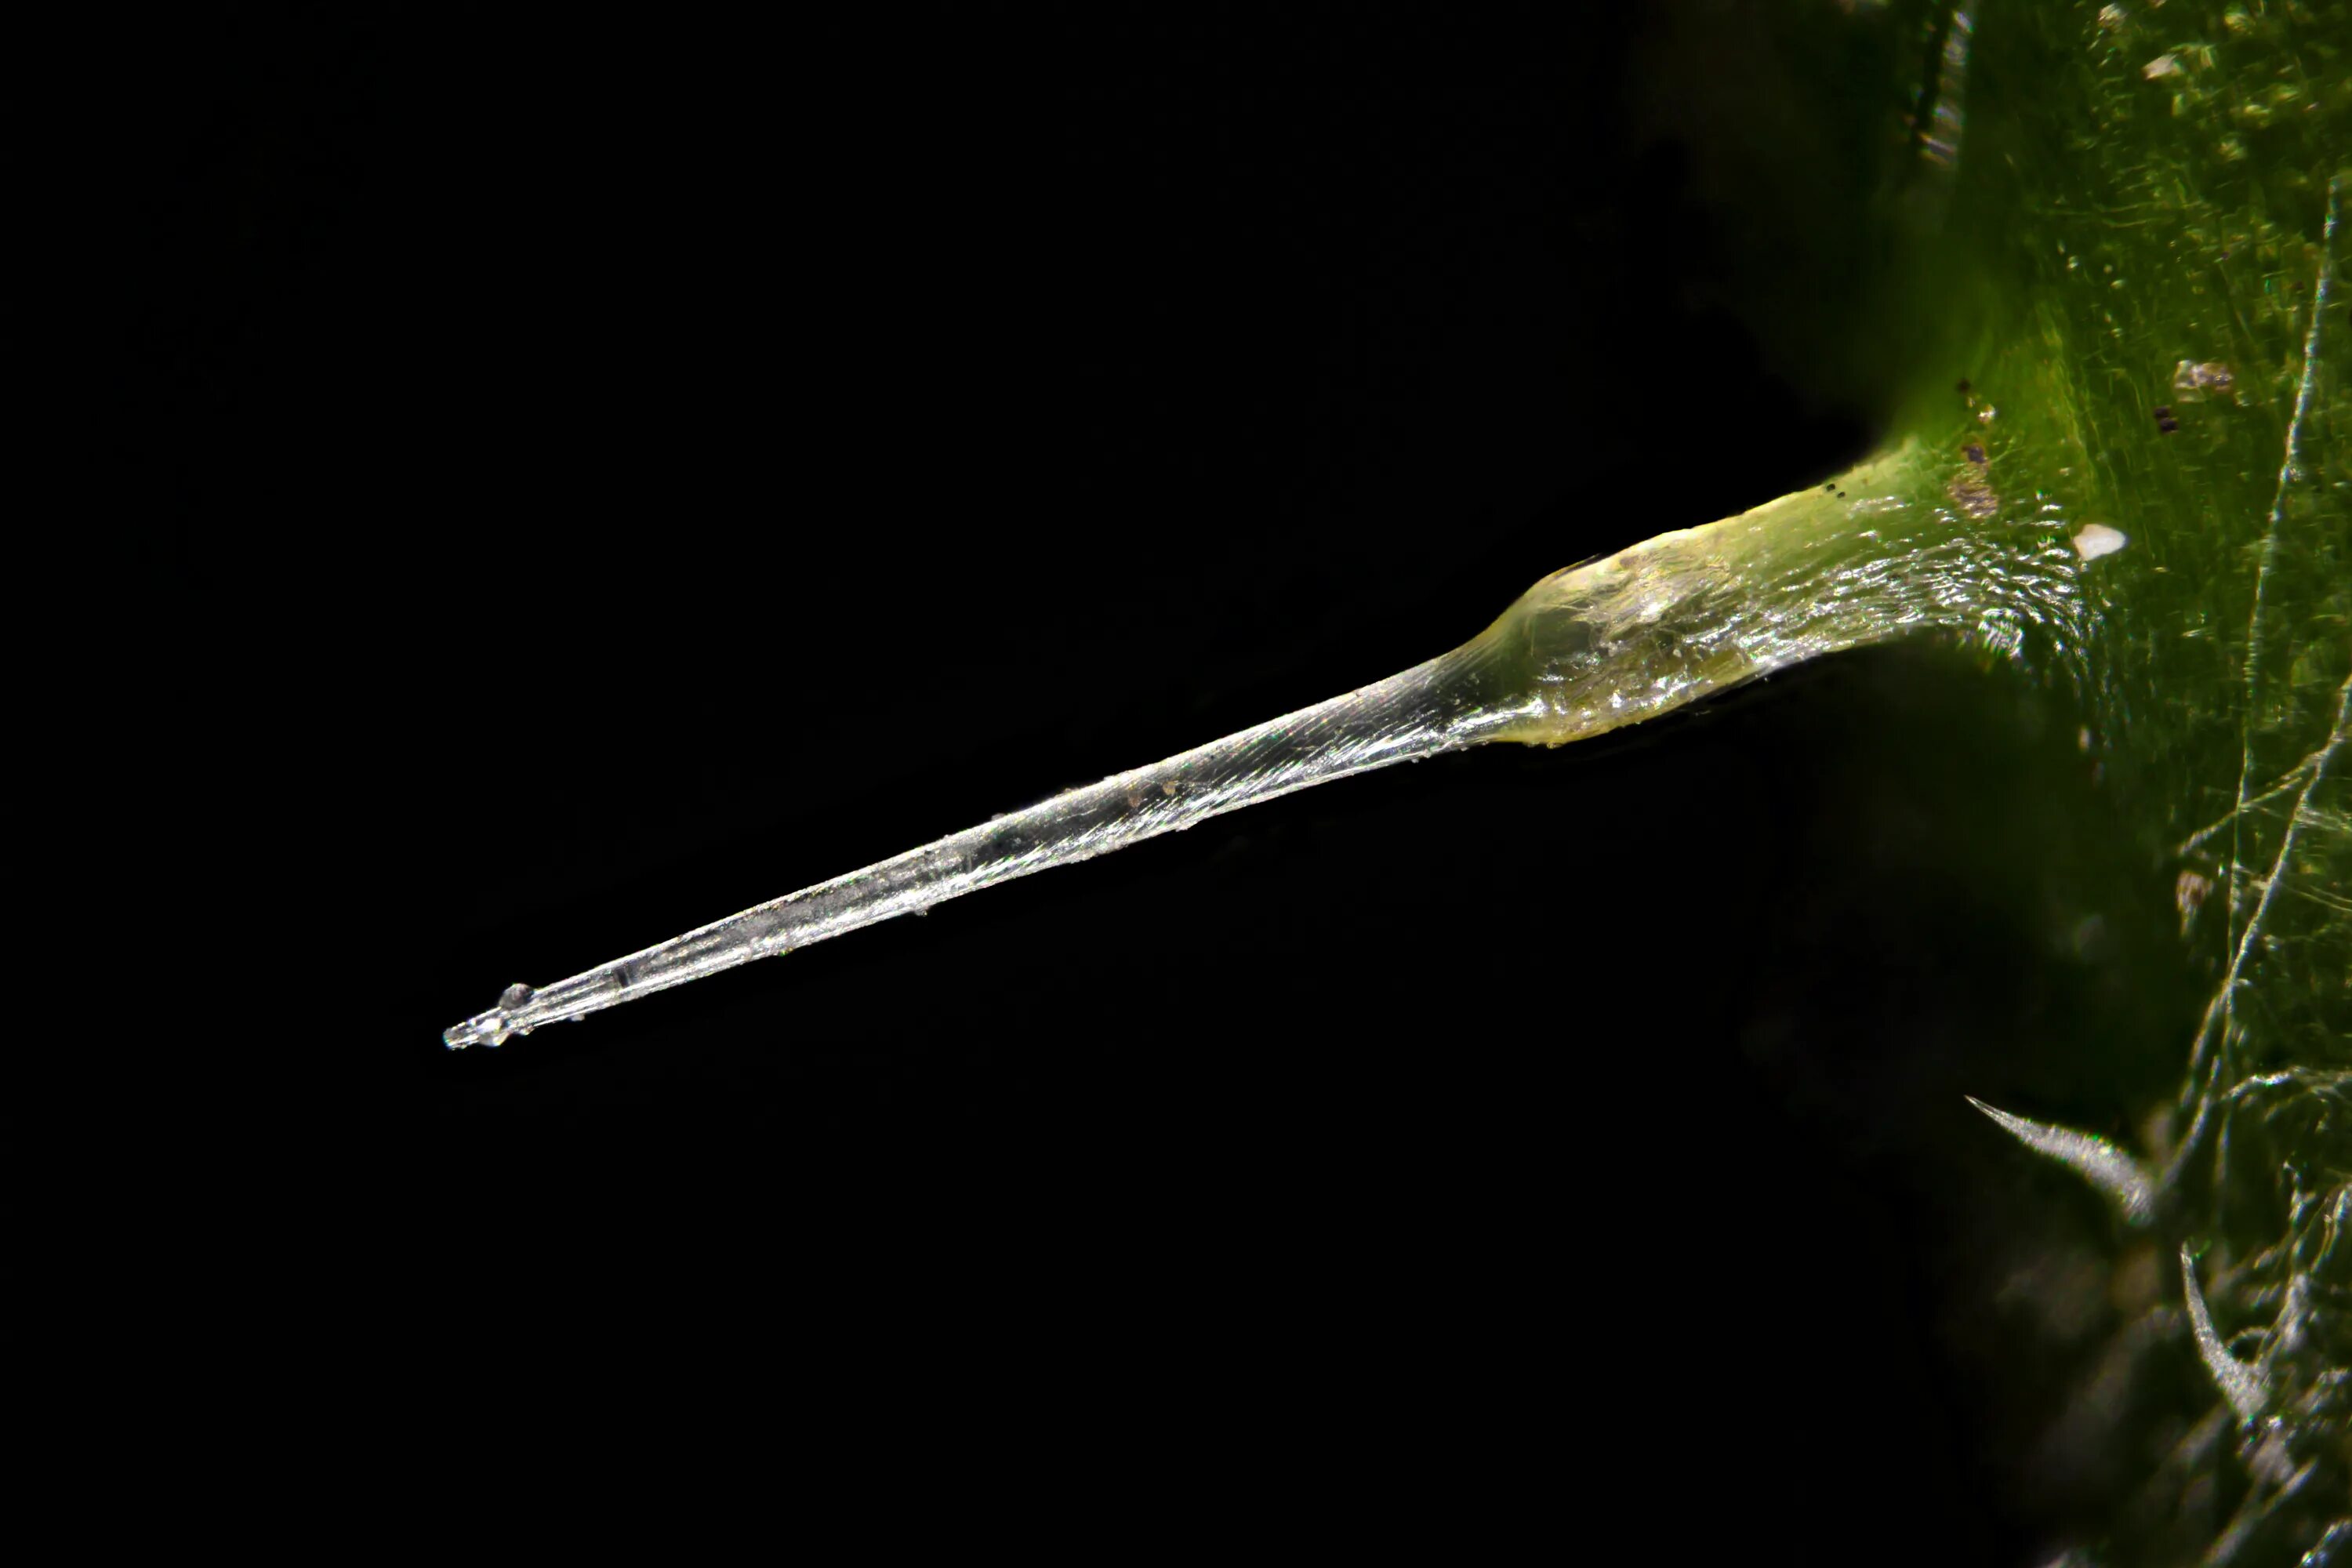 Строение жгучего волоска крапивы. Трихомы крапивы под микроскопом. Иглы крапивы. Иглы крапивы под микроскопом. Лист крапивы под микроскопом.